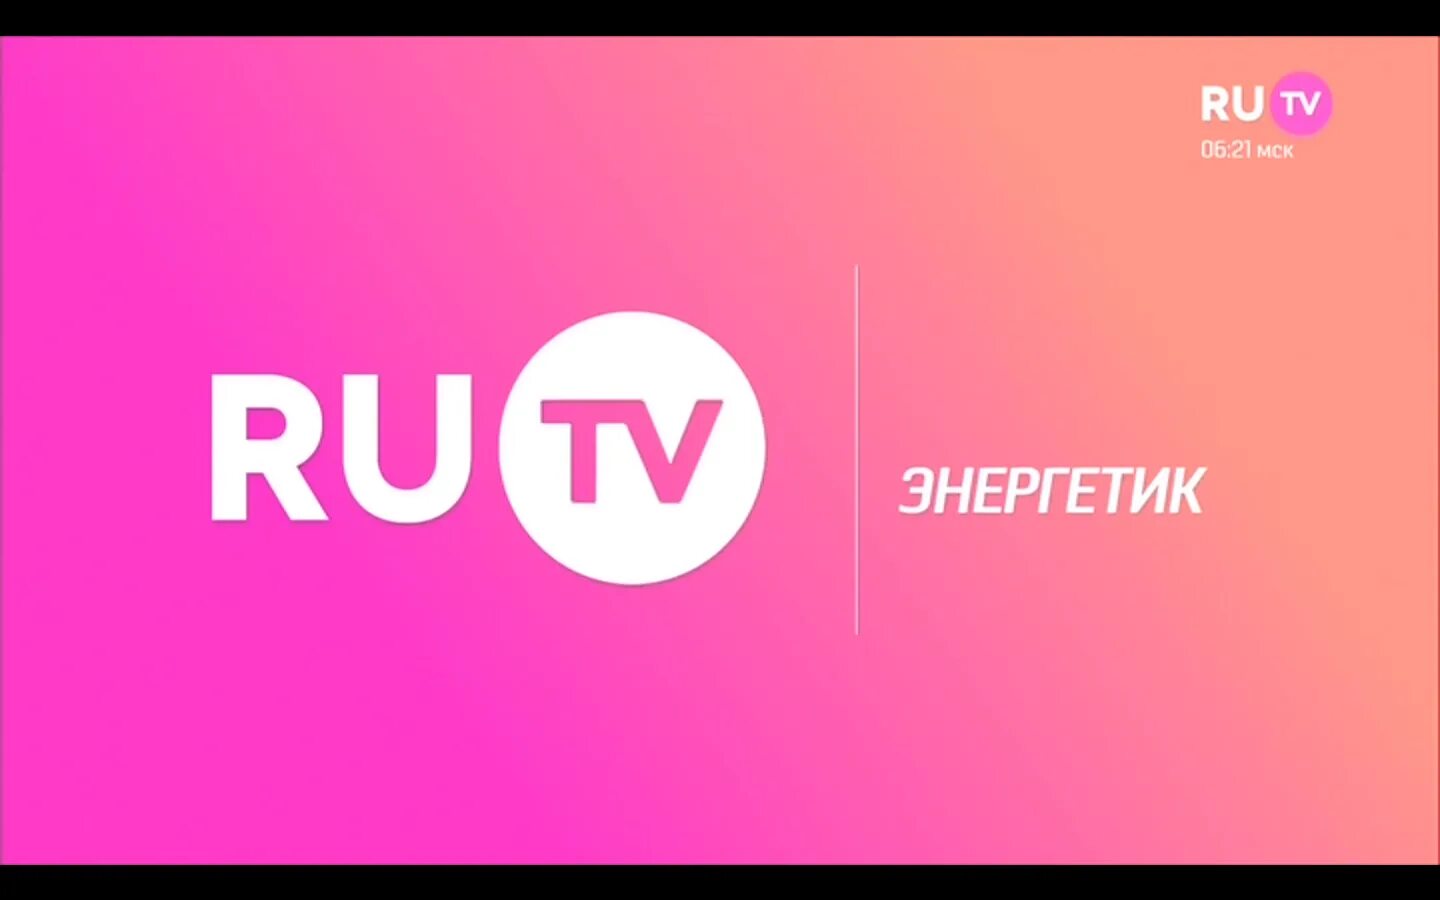 Ру ТВ. Ru TV логотип. Логотип канала ру ТВ.